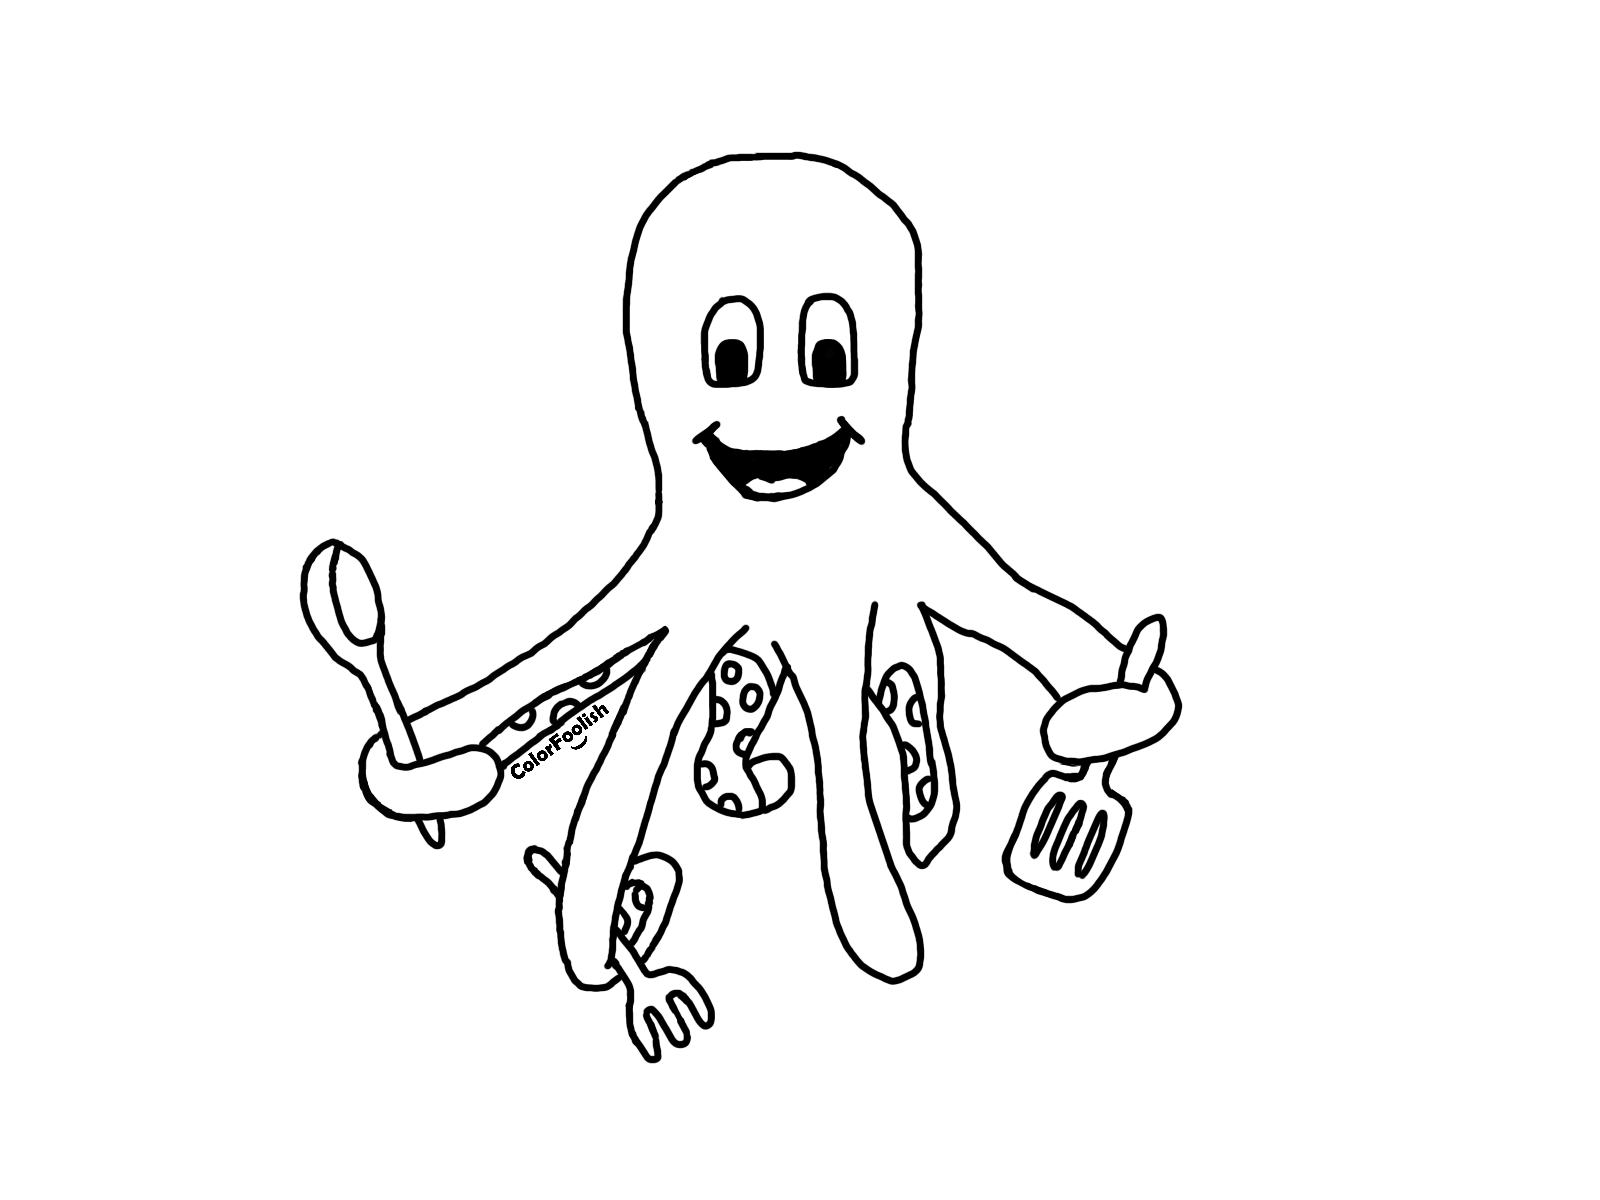 Dibujo para colorear de un calamar hirviendo